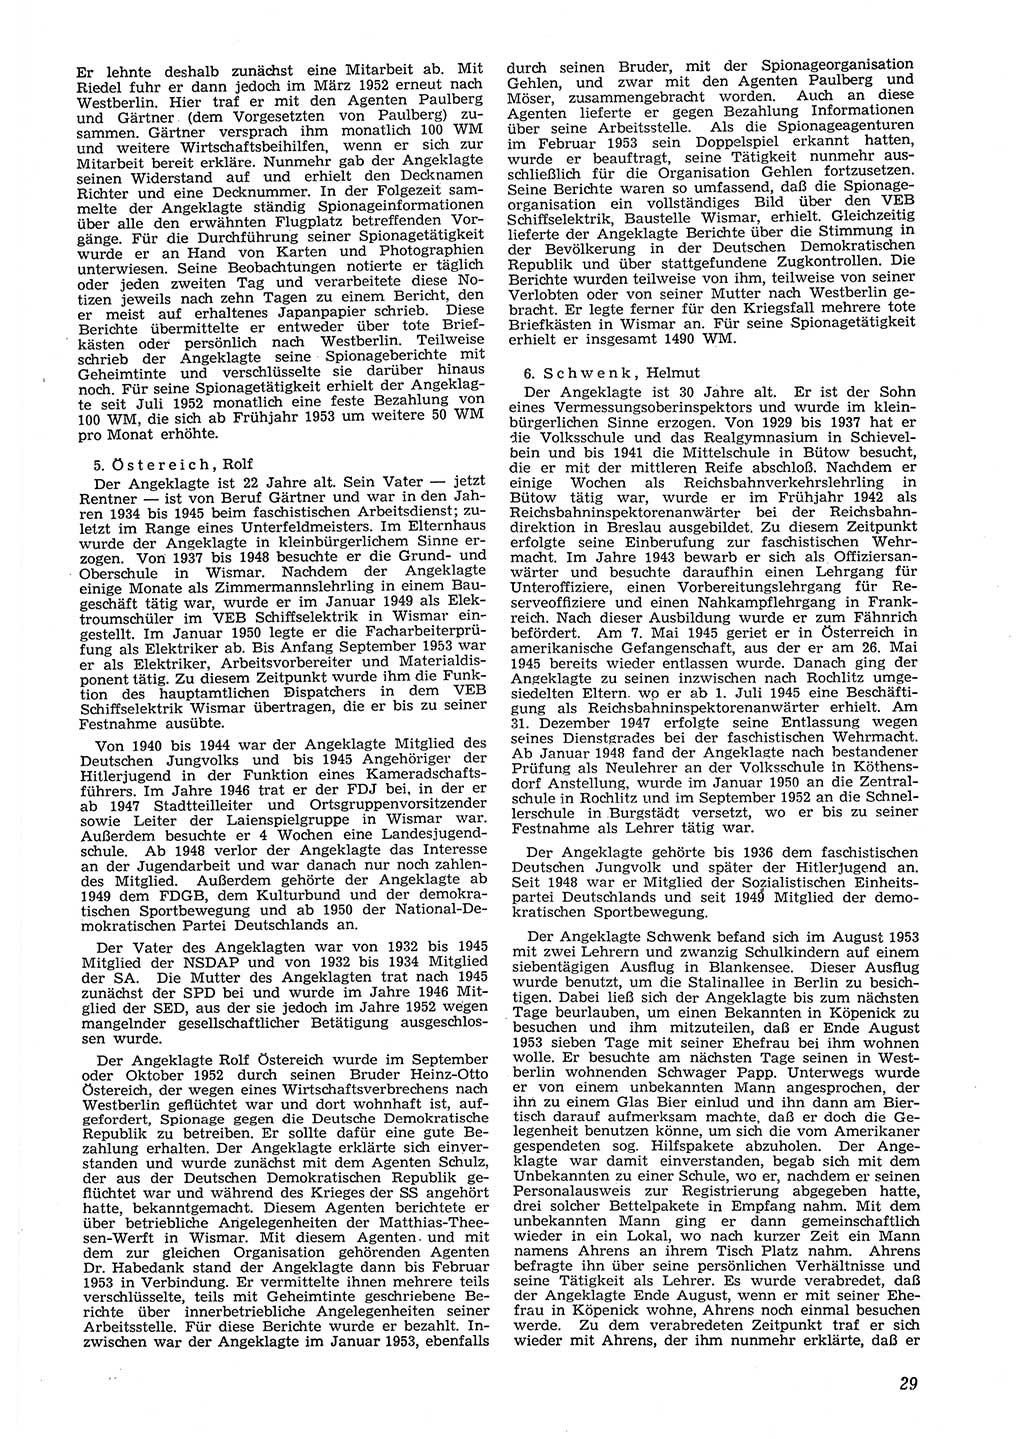 Neue Justiz (NJ), Zeitschrift für Recht und Rechtswissenschaft [Deutsche Demokratische Republik (DDR)], 8. Jahrgang 1954, Seite 29 (NJ DDR 1954, S. 29)